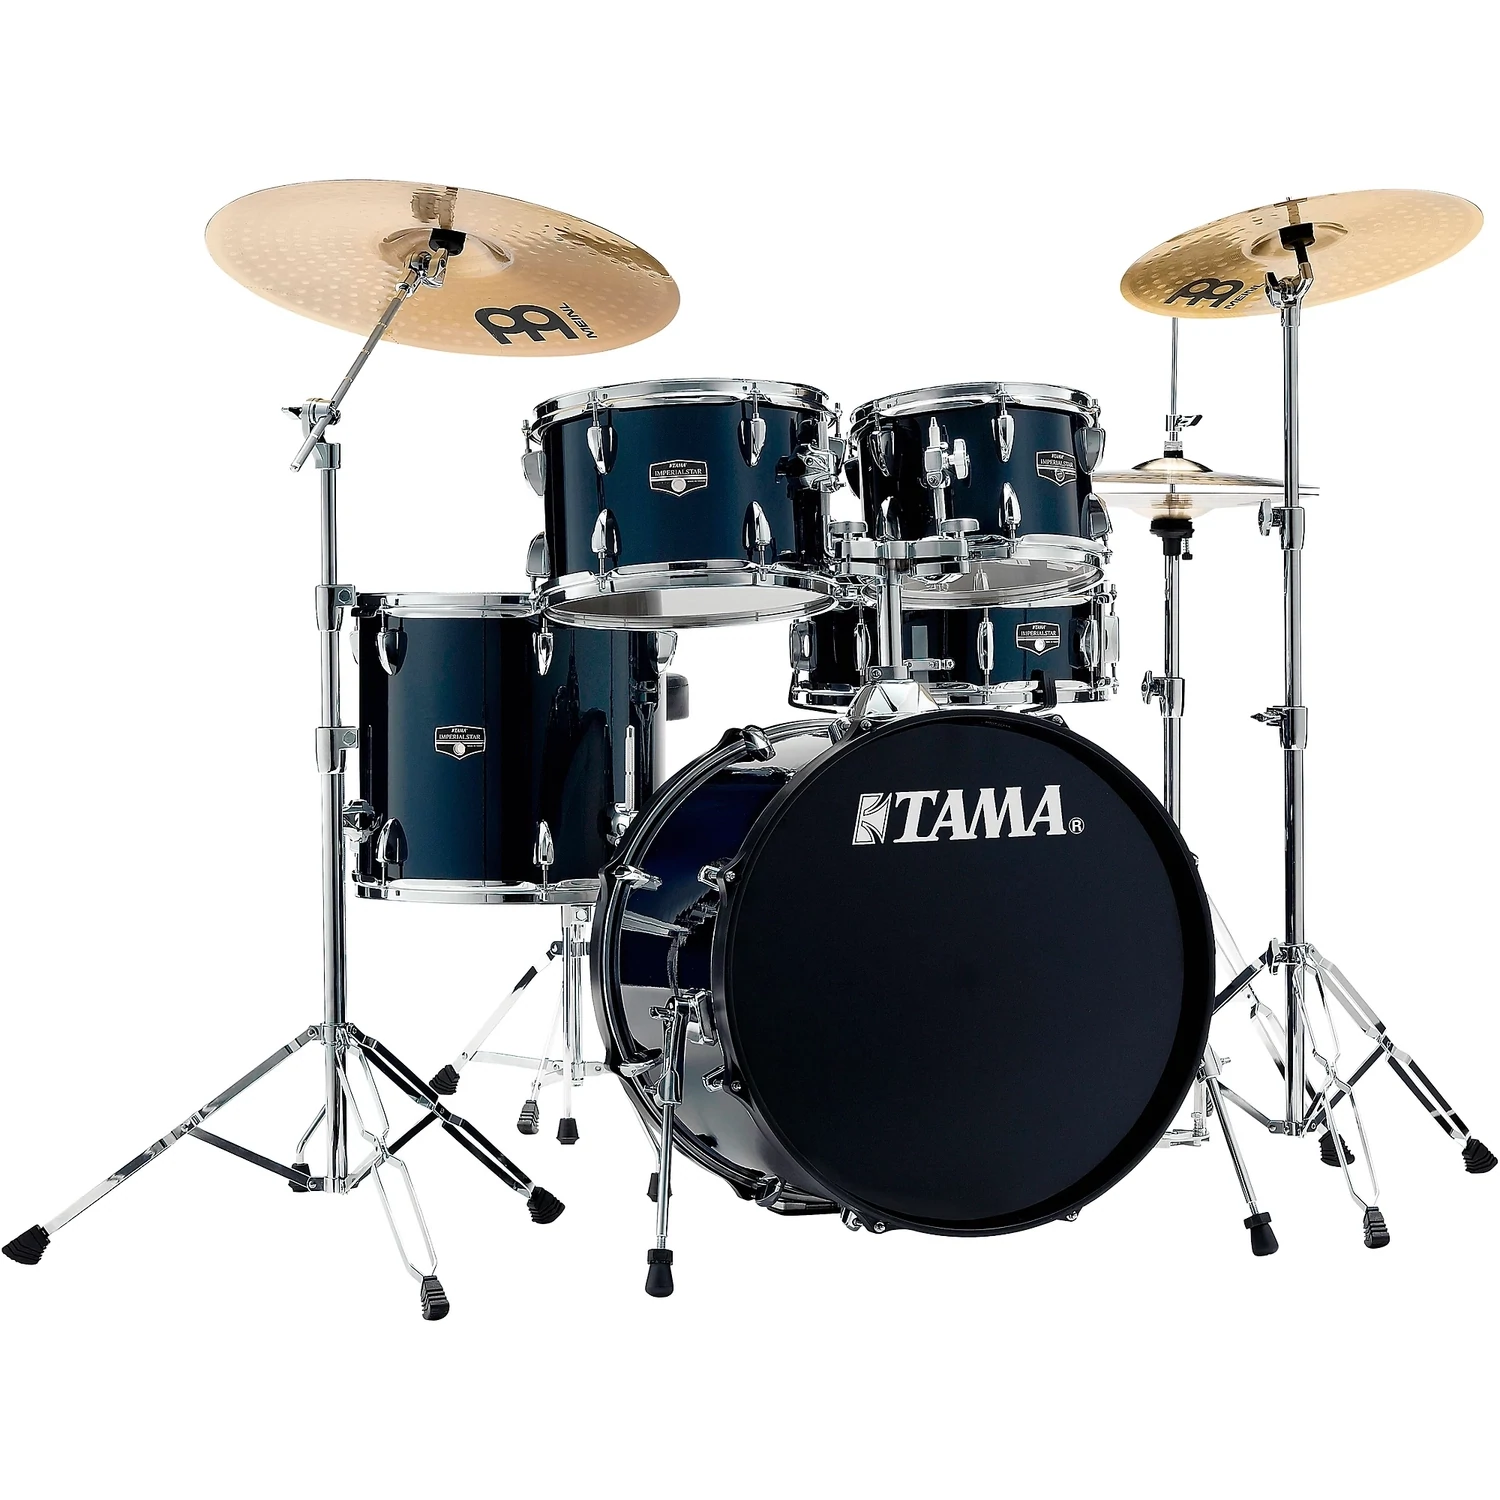 TAMA Imperialstar 5-Piece Complete Drum Set With Hardware - Dark Blue